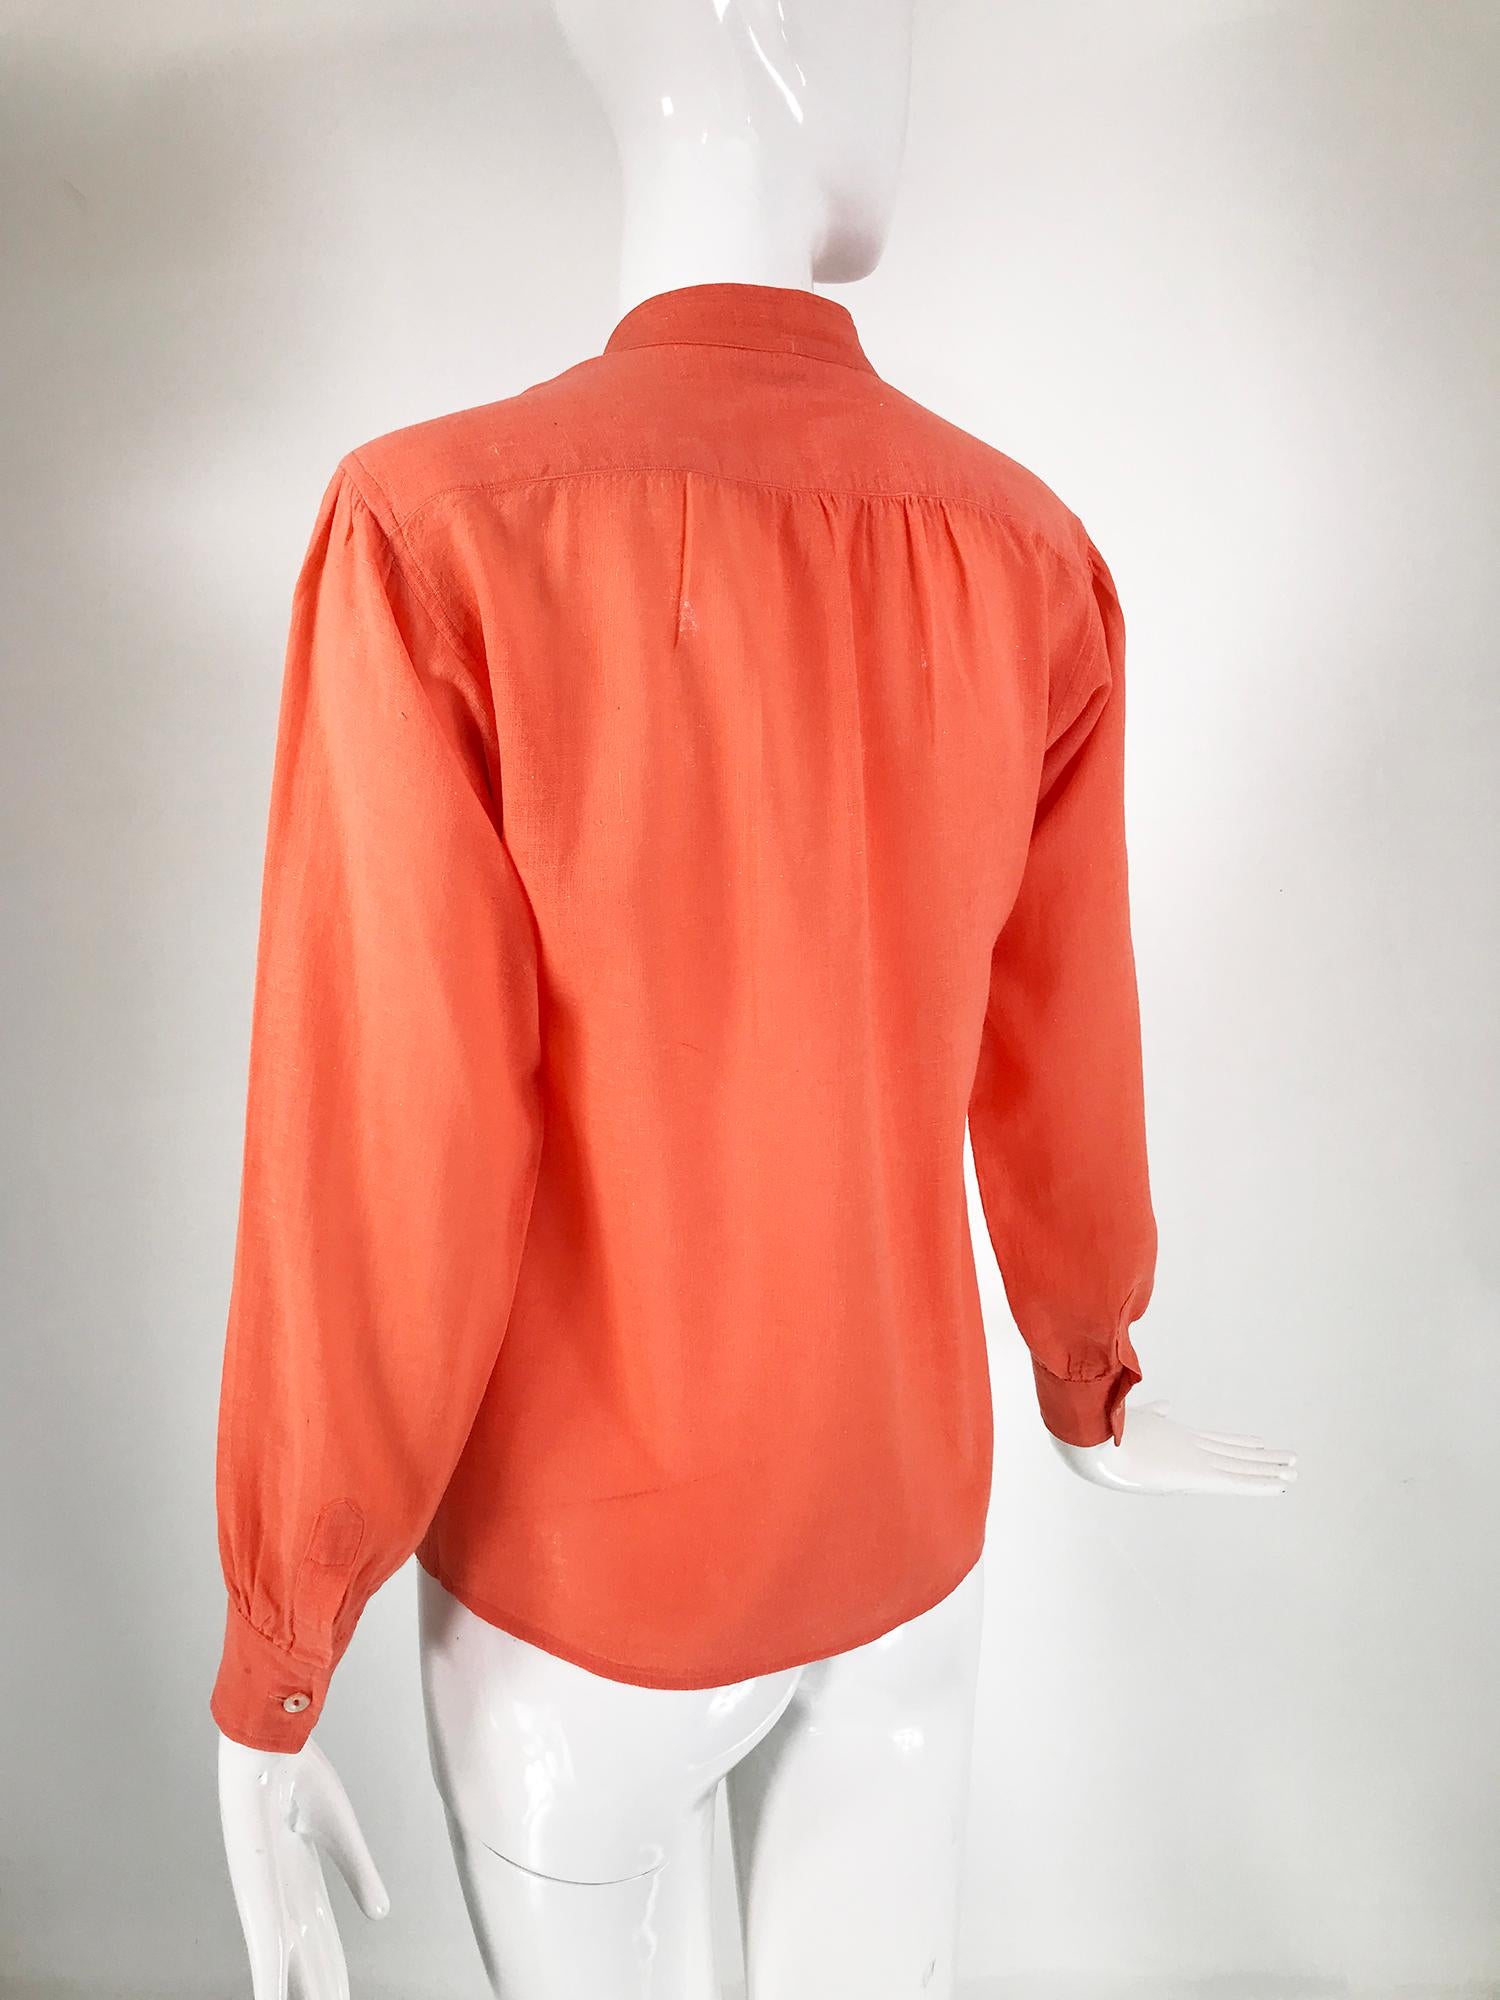 Red Yves Saint Laurent Rive Gauche Orange Cotton Gauze Blouse 1960s